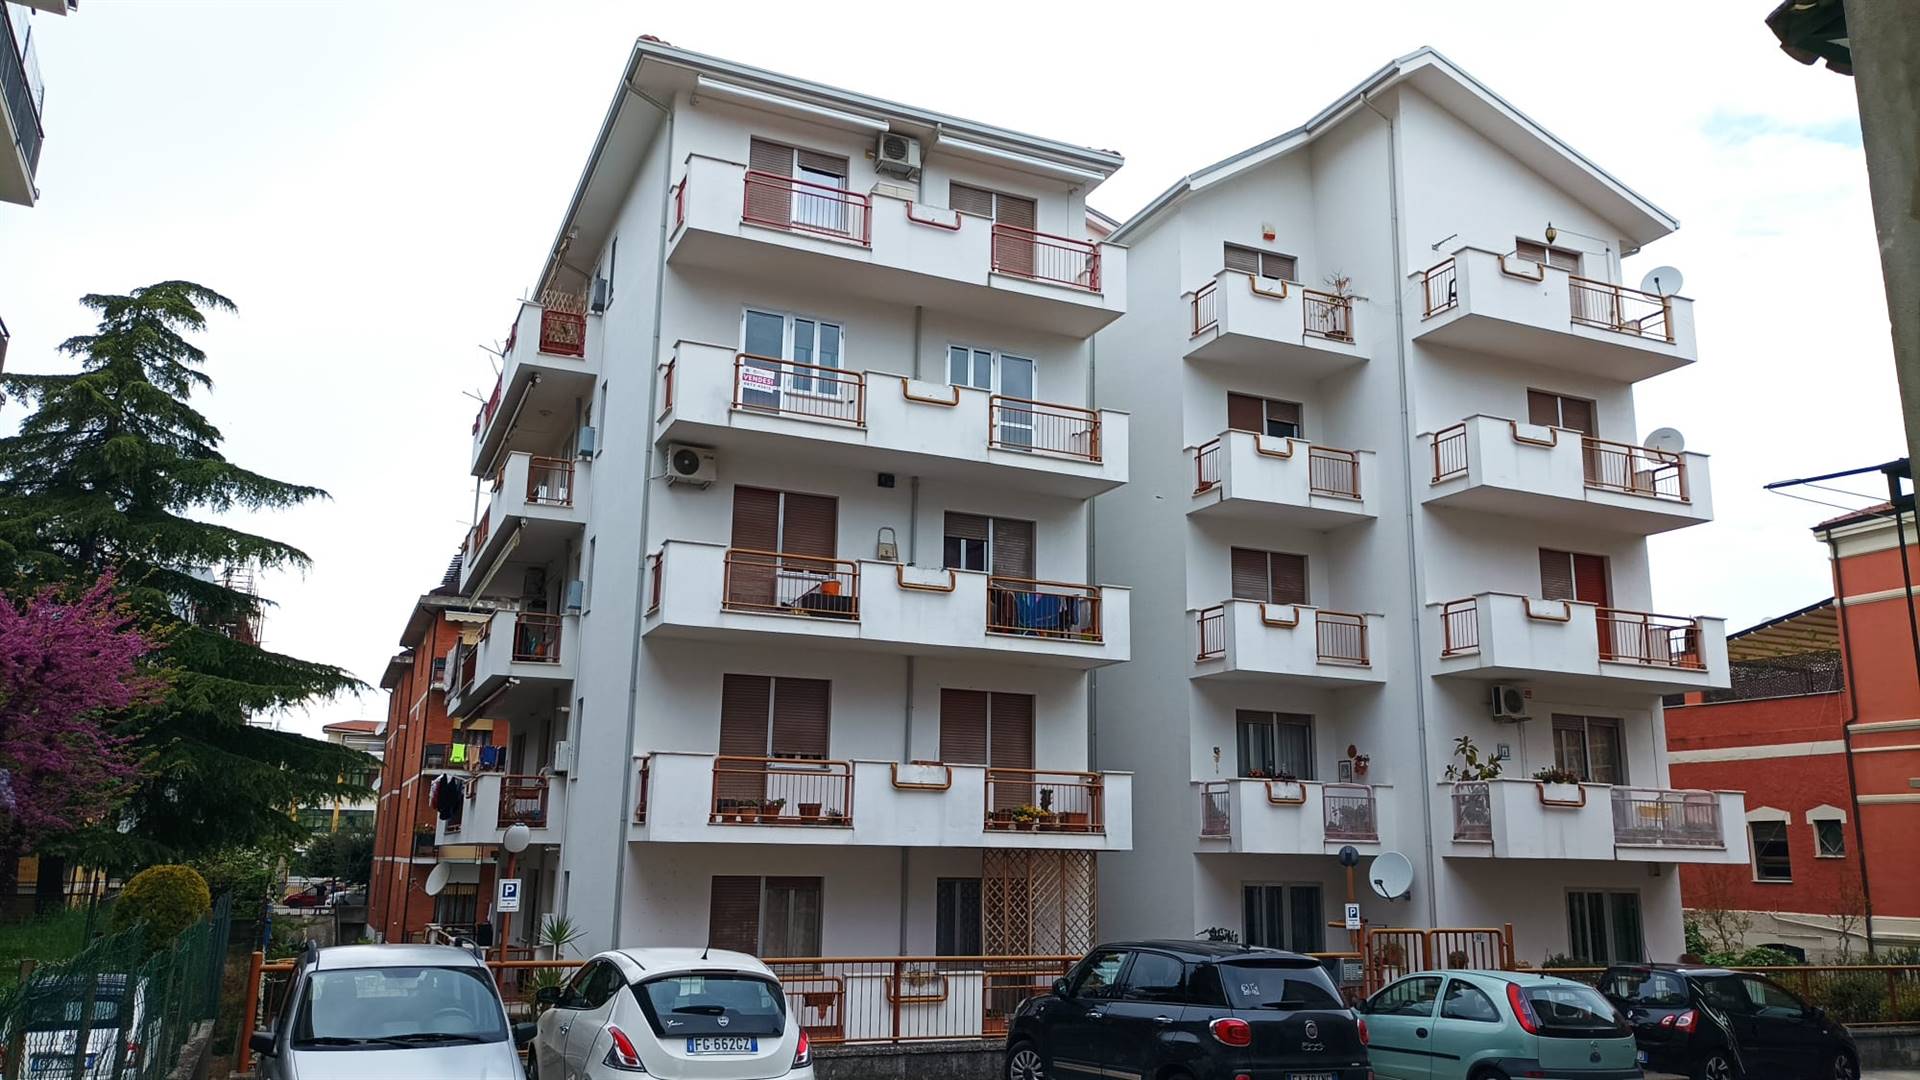 Appartamento in vendita a Lanciano, 8 locali, prezzo € 160.000 | PortaleAgenzieImmobiliari.it